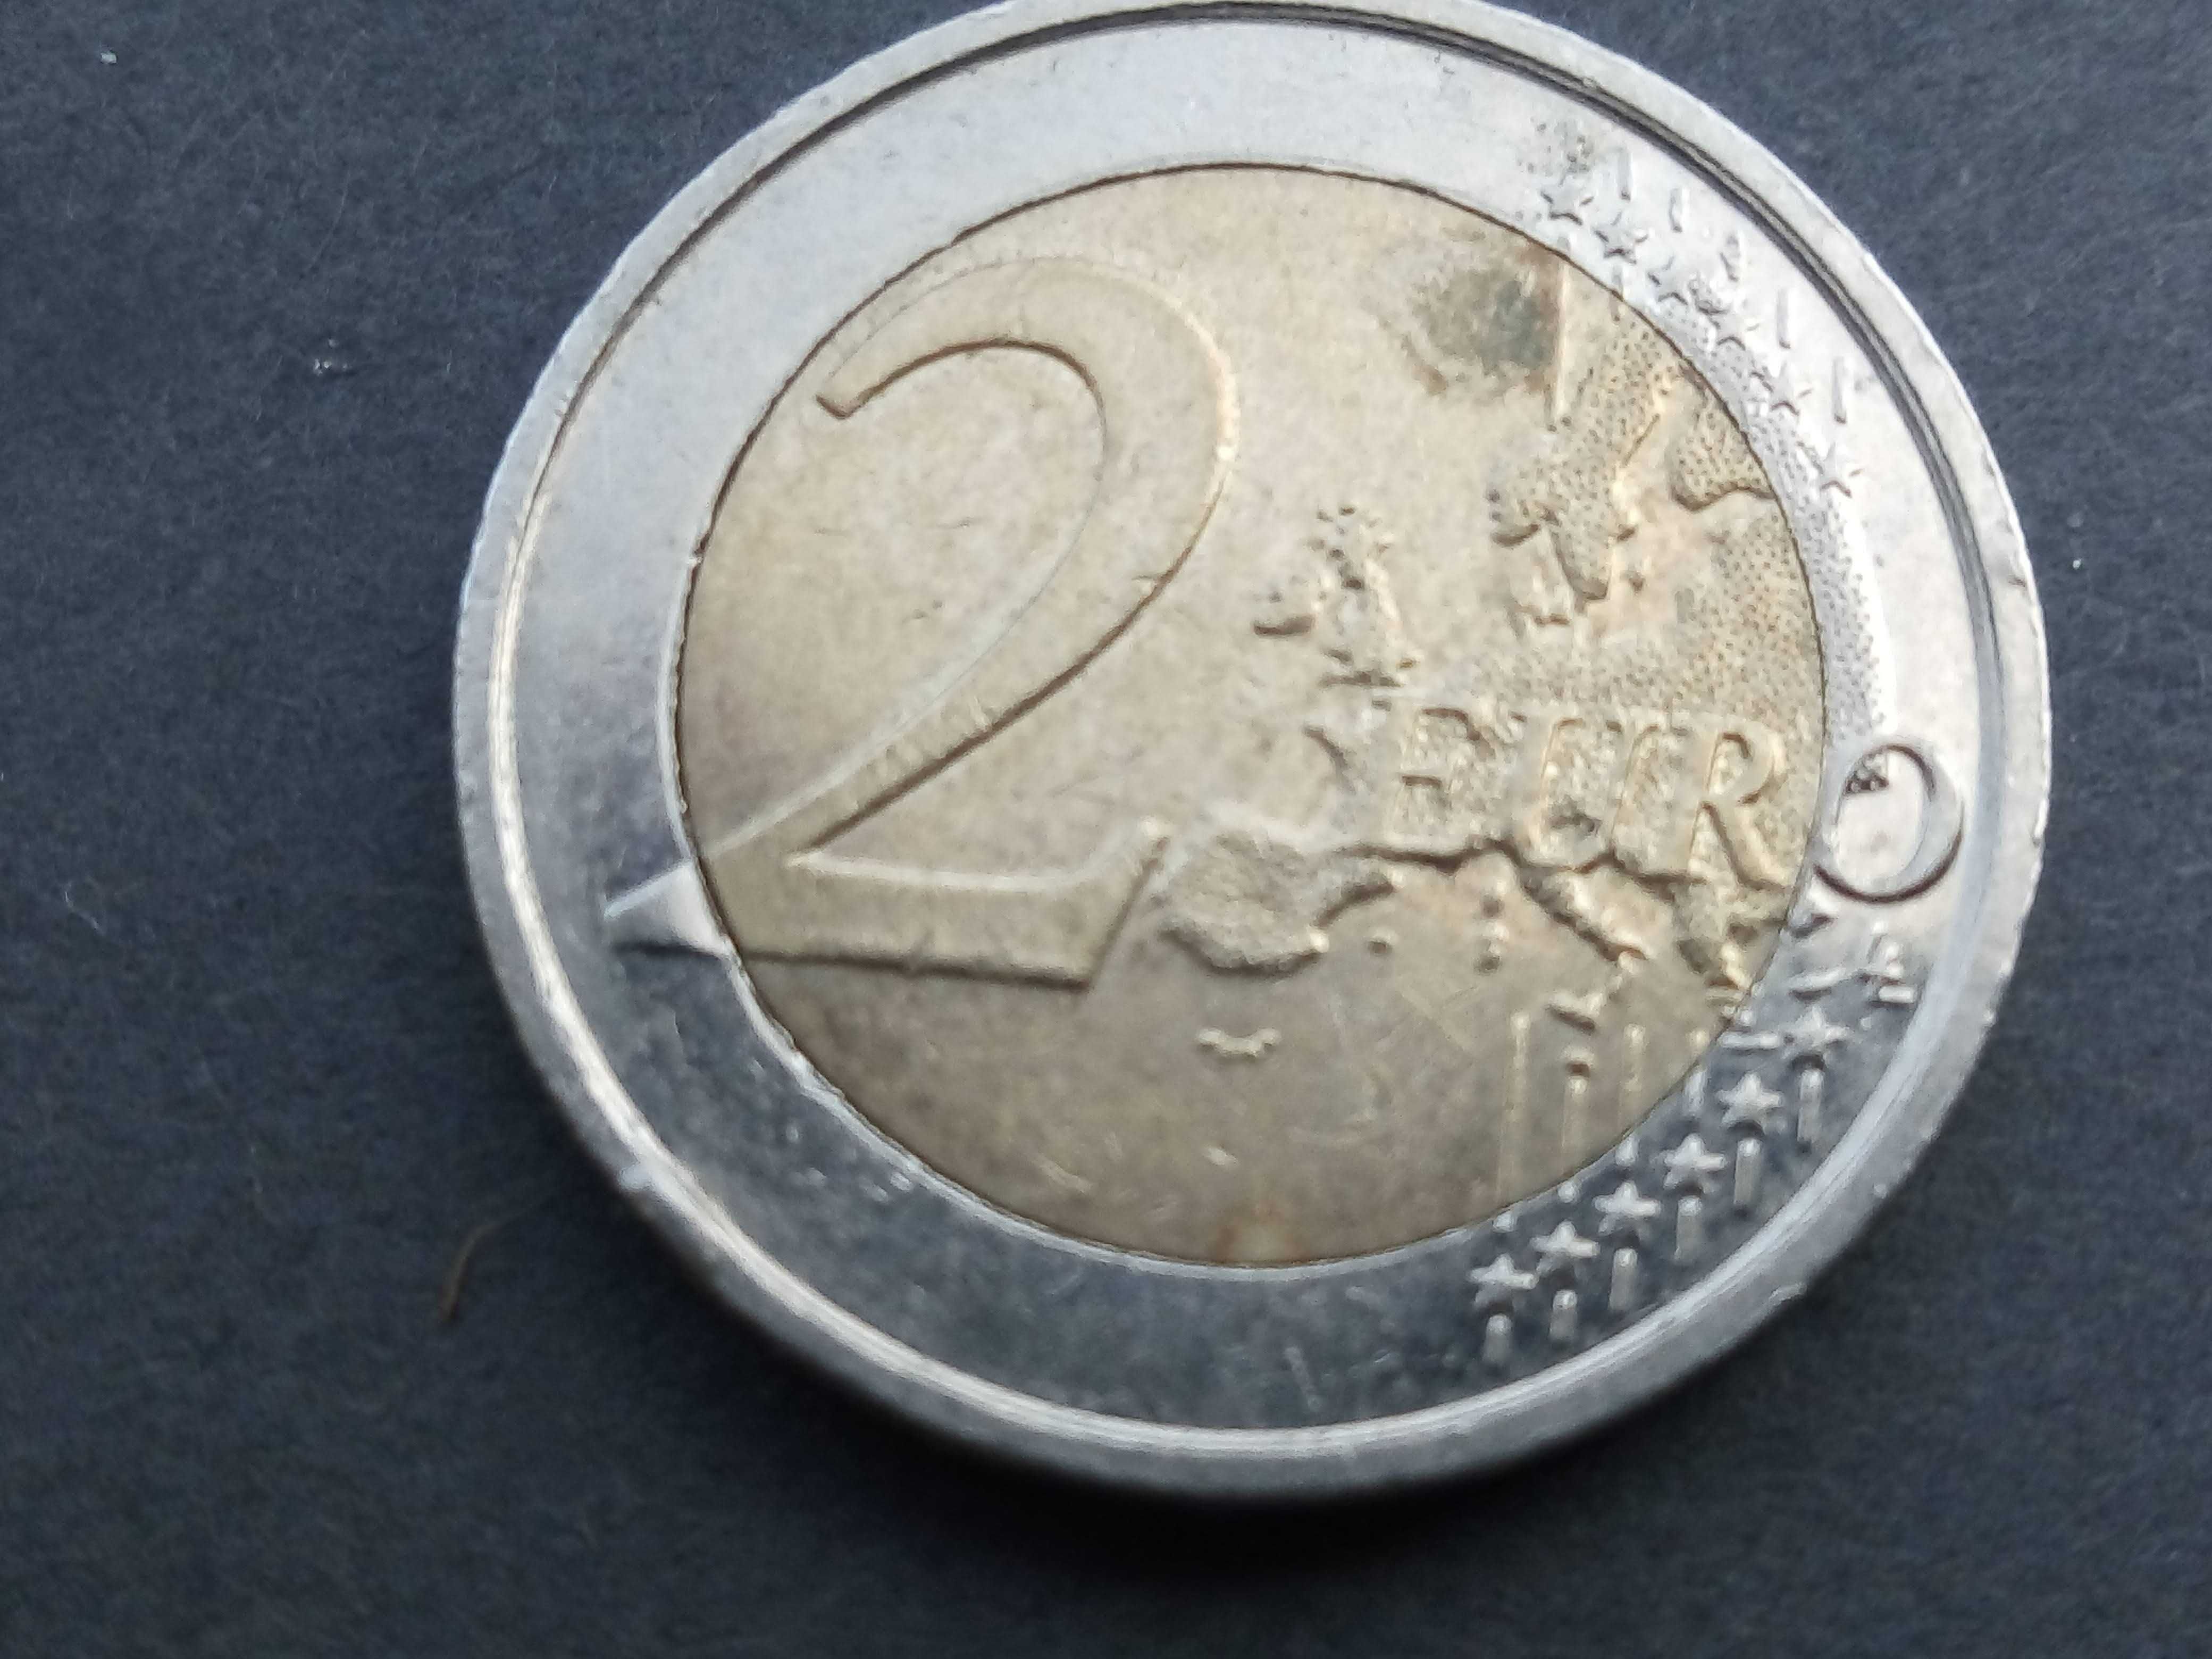 2 moedas de 2 euros 2009 10º Aniversário da UEM ~~Áustria e Bélgica